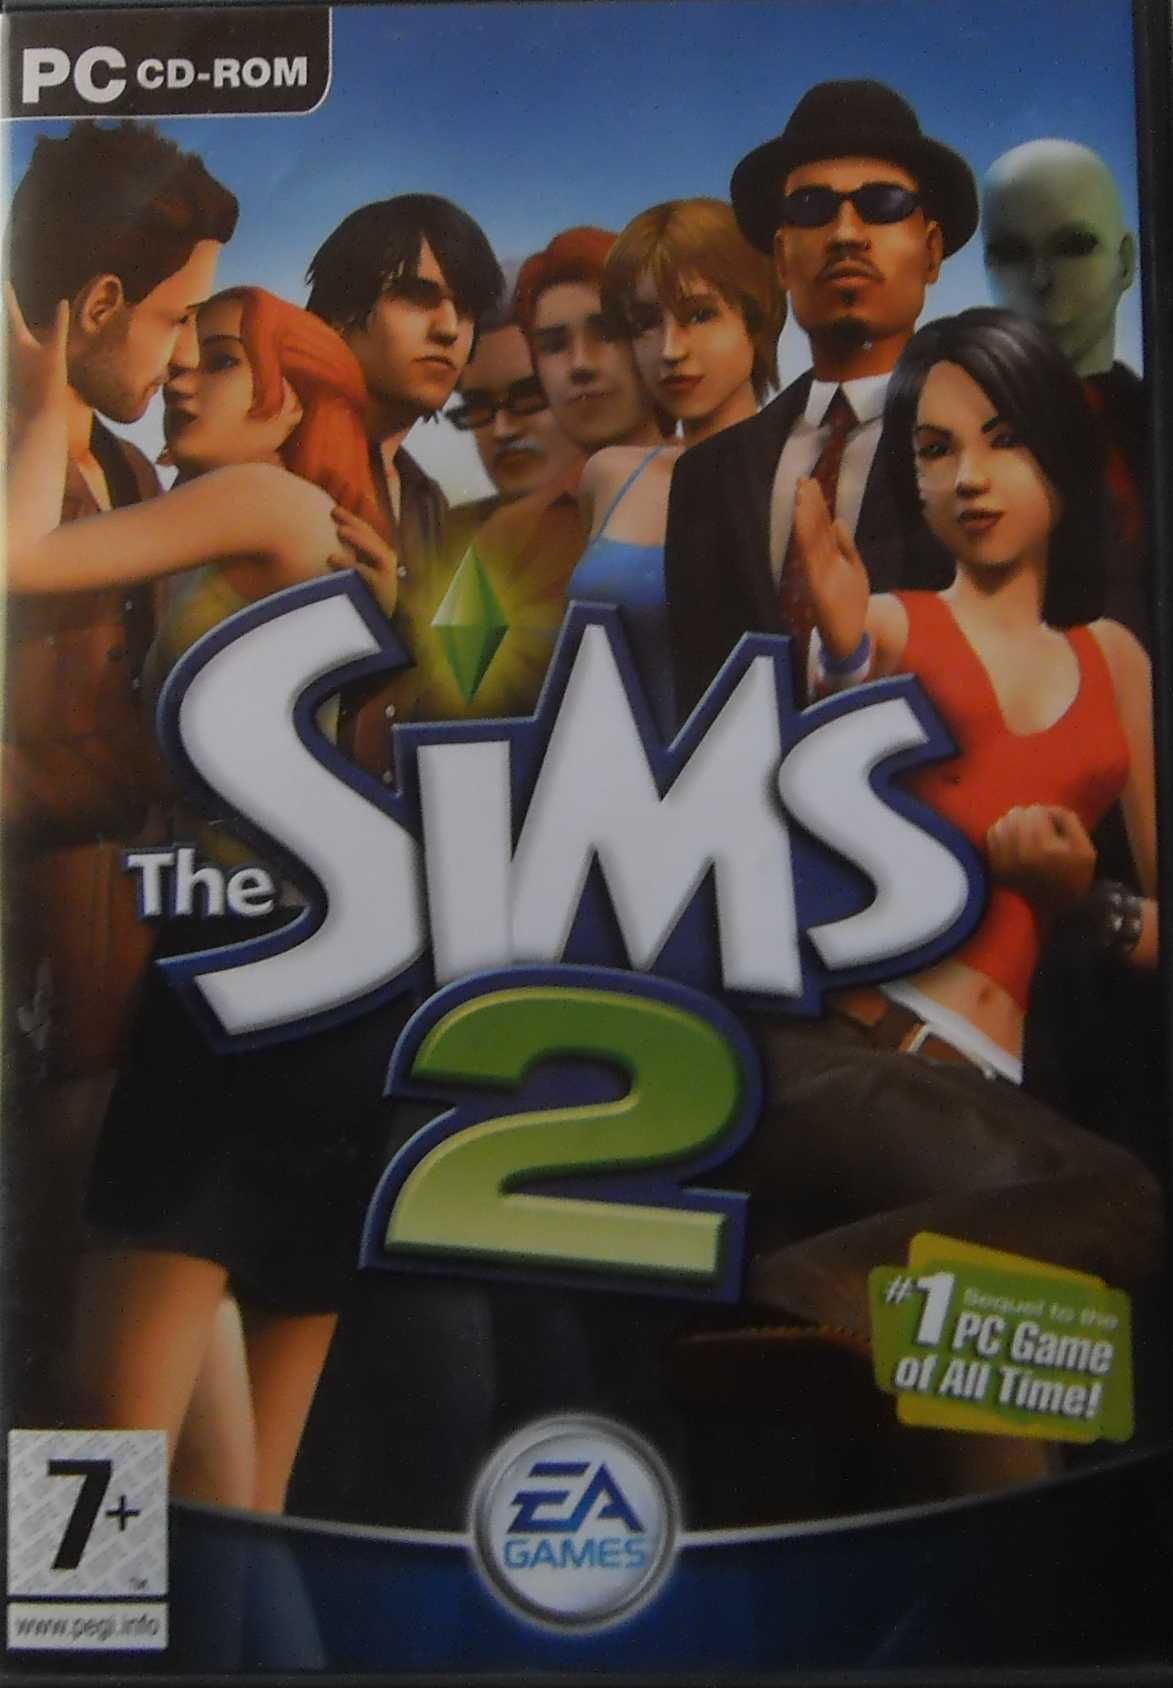 Jogo PC/CD-ROM "Os Sims 2" ORIGINAL COMPLETO - 4 CD - Em Inglês